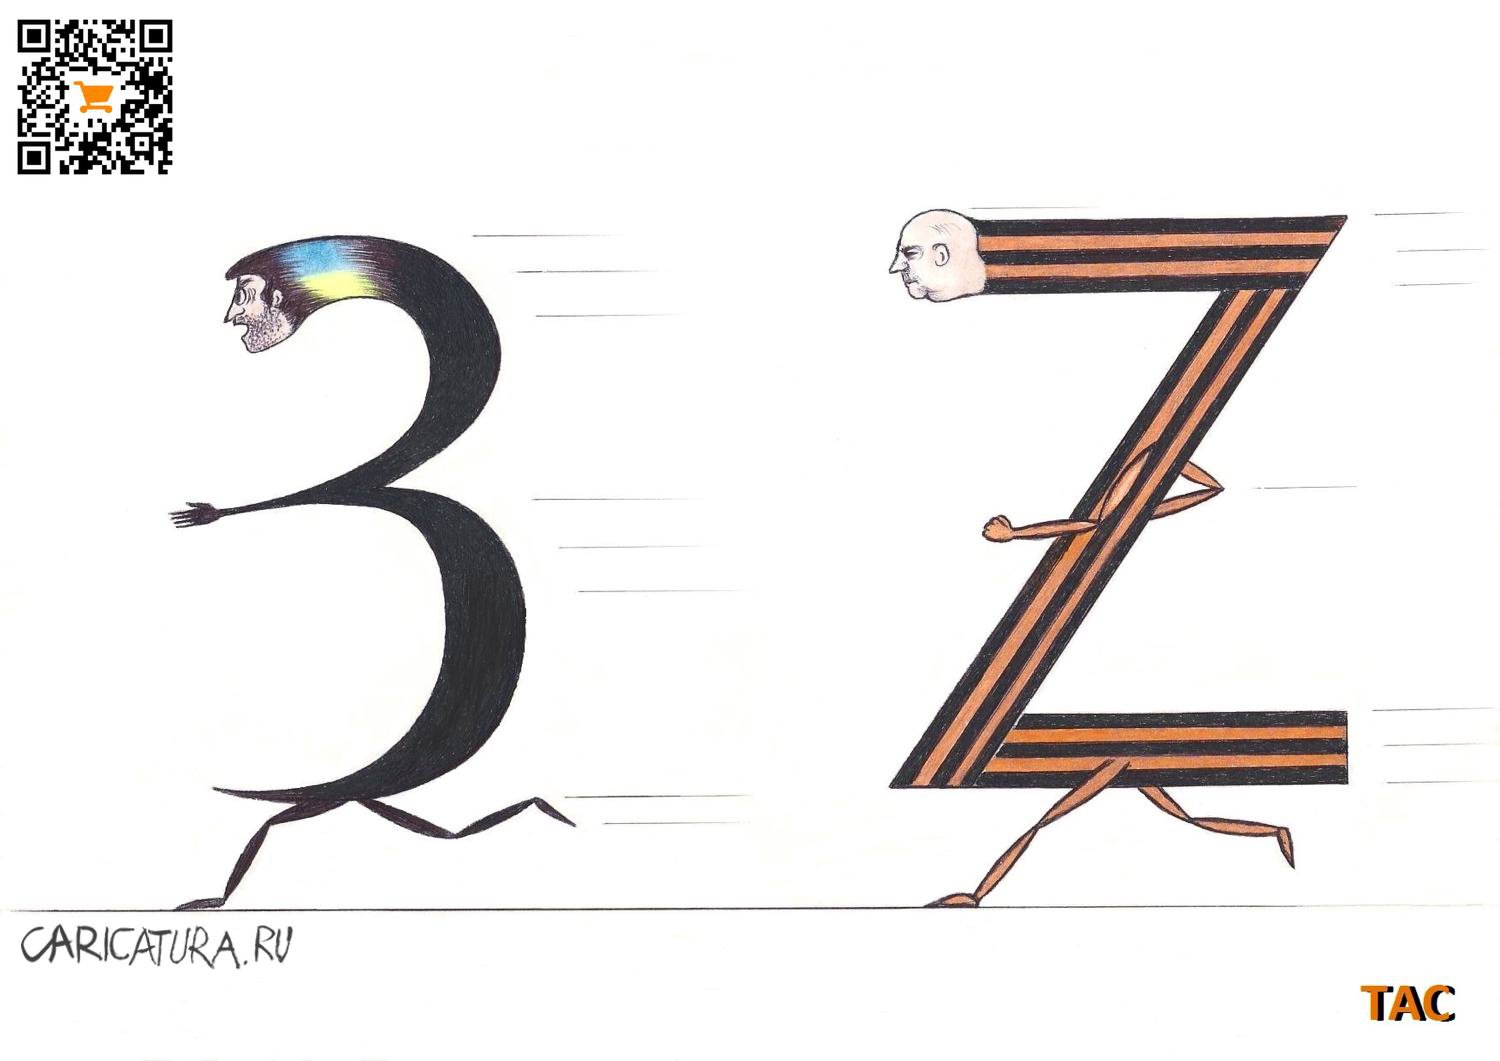 Карикатура "З и Z", Александр Троицкий